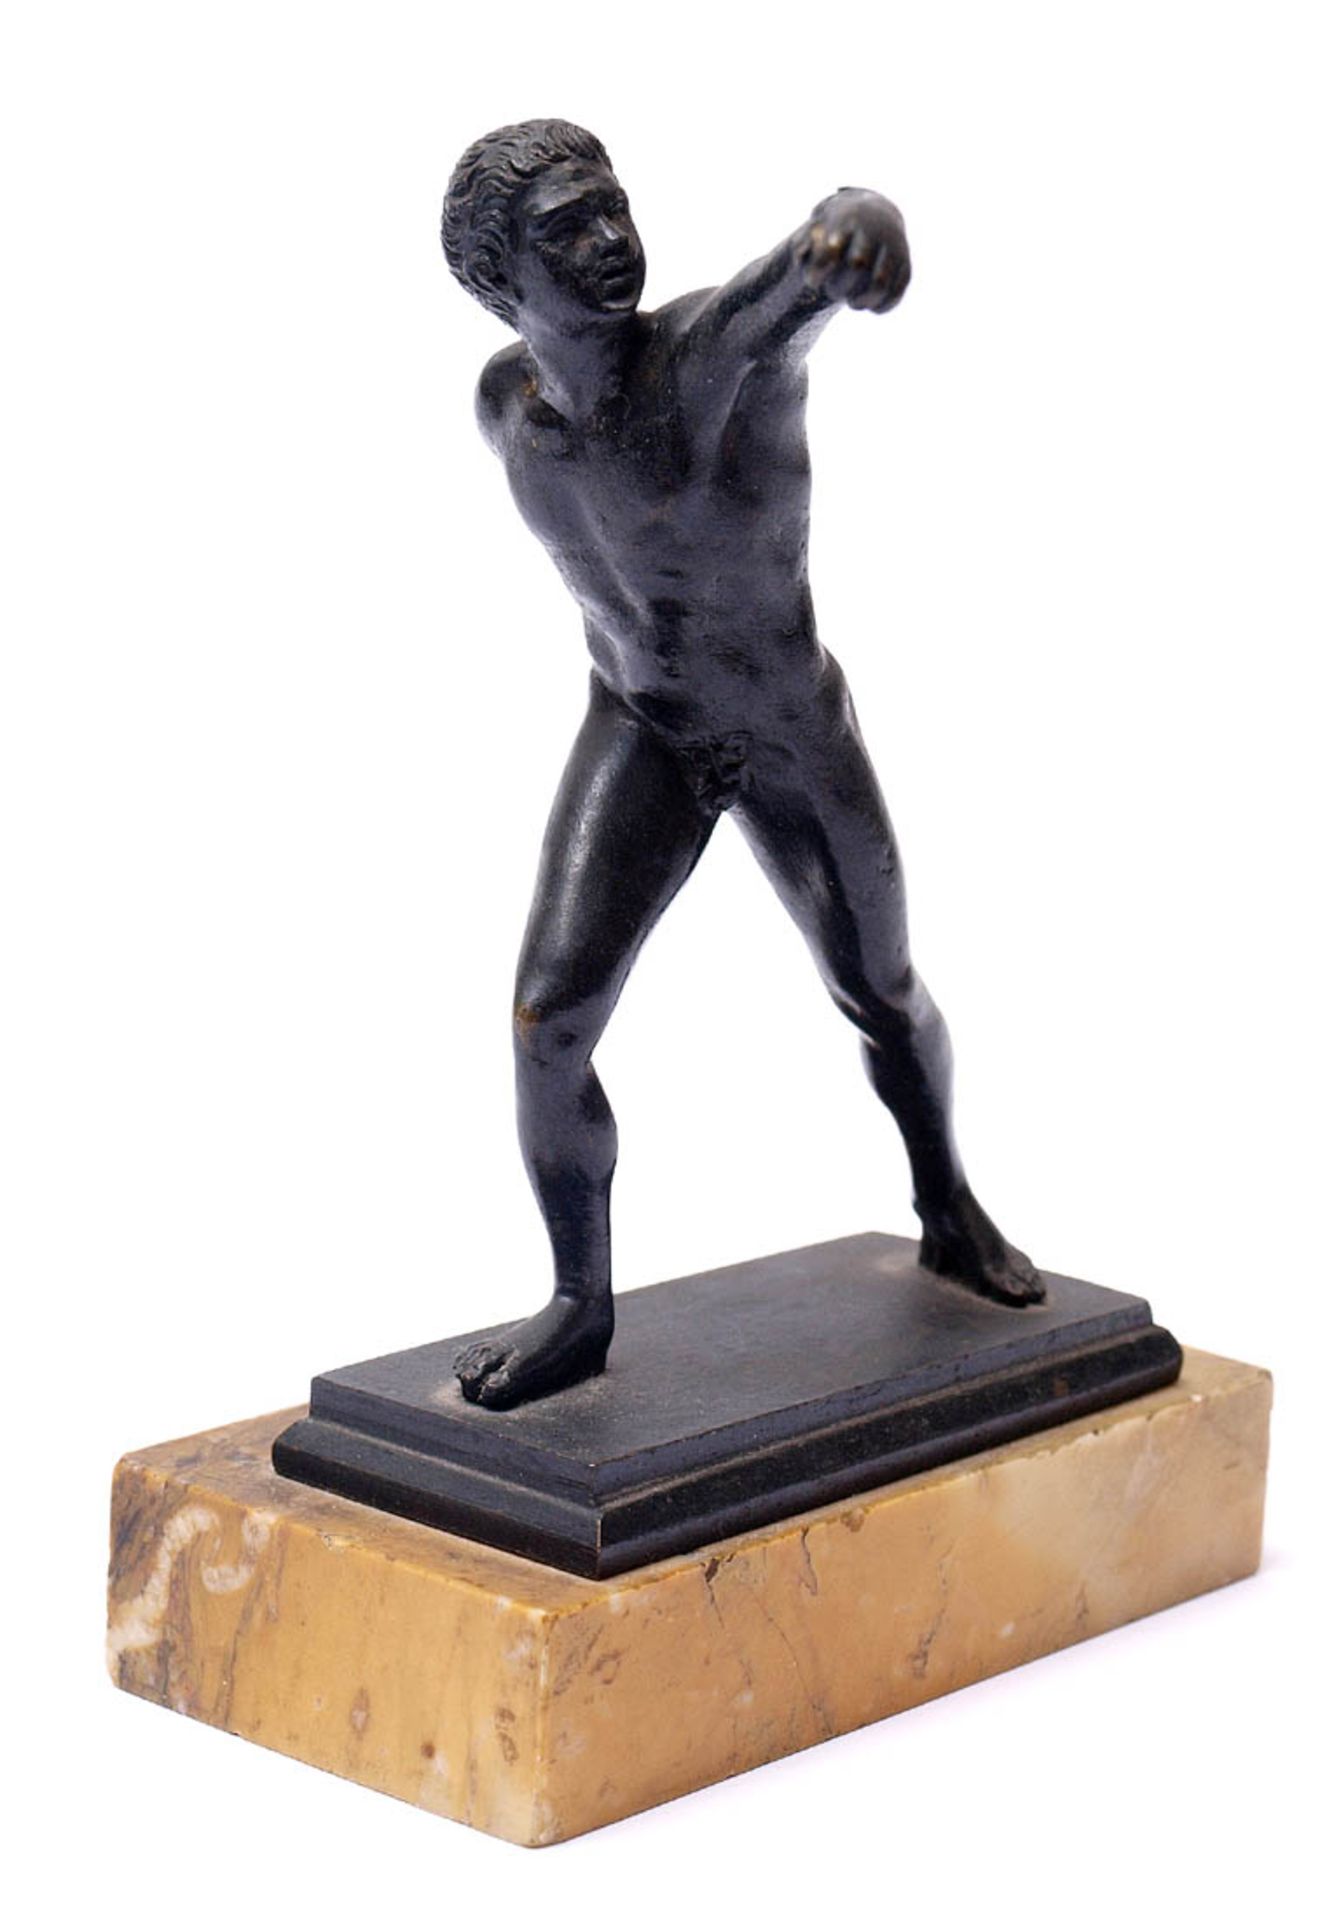 Museumsreplik, 19.Jhdt.Faustkämpfer nach römischem Vorbild. Bronze, schwarz patiniert, auf gelb- - Bild 2 aus 4